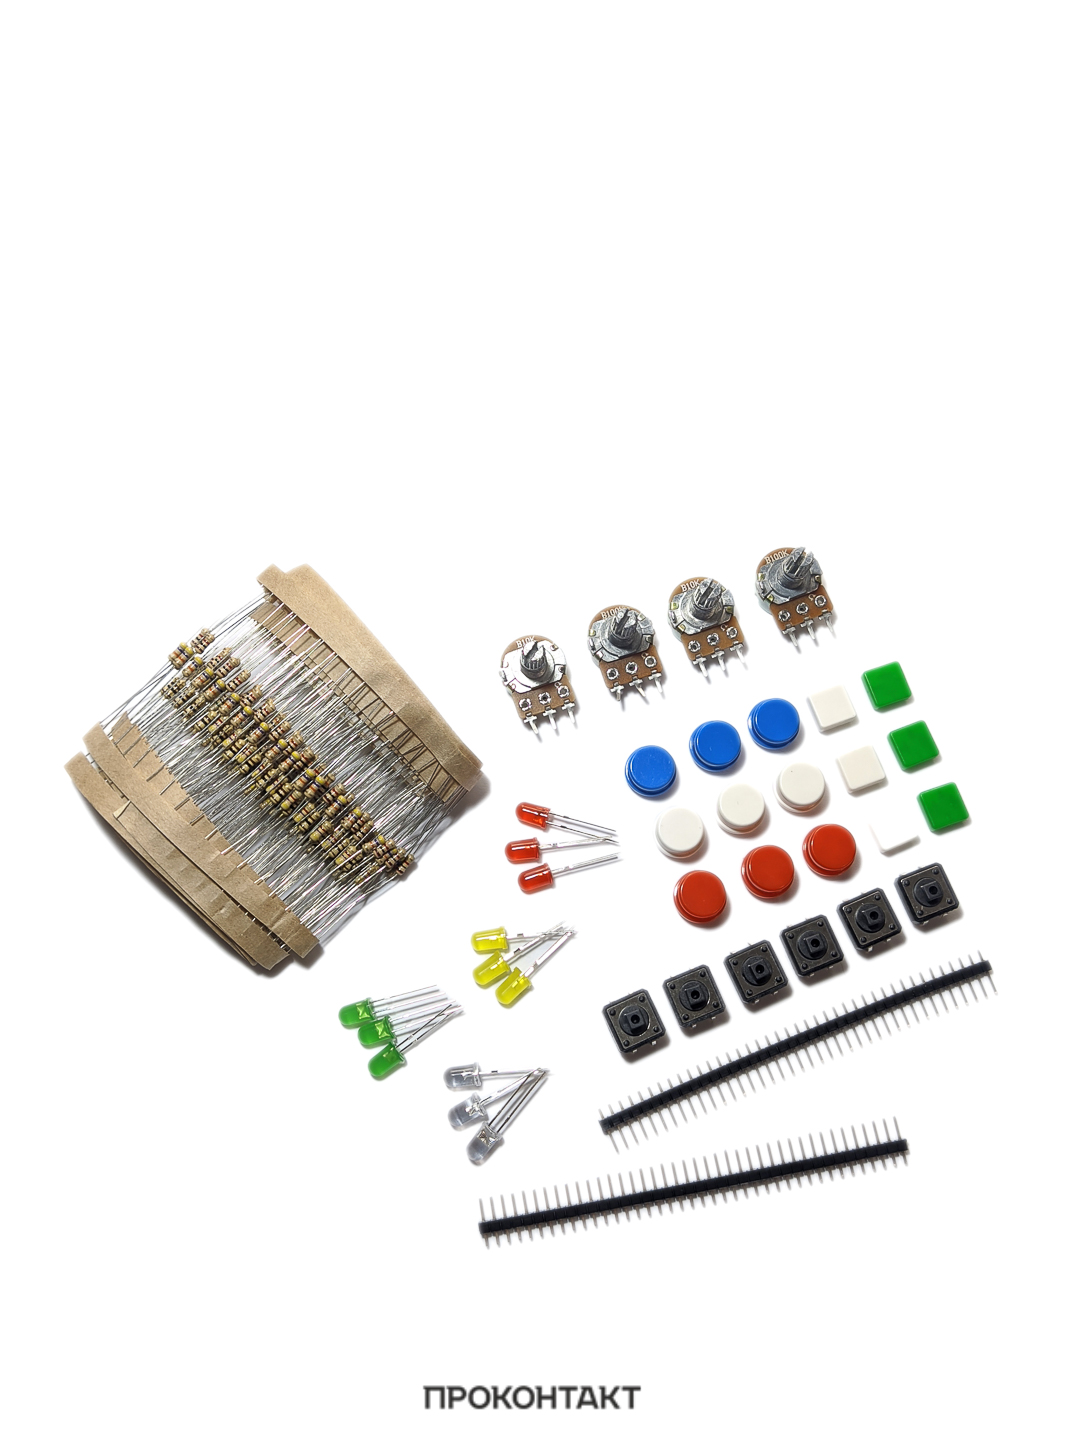 Купить Набор резисторов и светодиодов для работы с Arduino в Челябинске